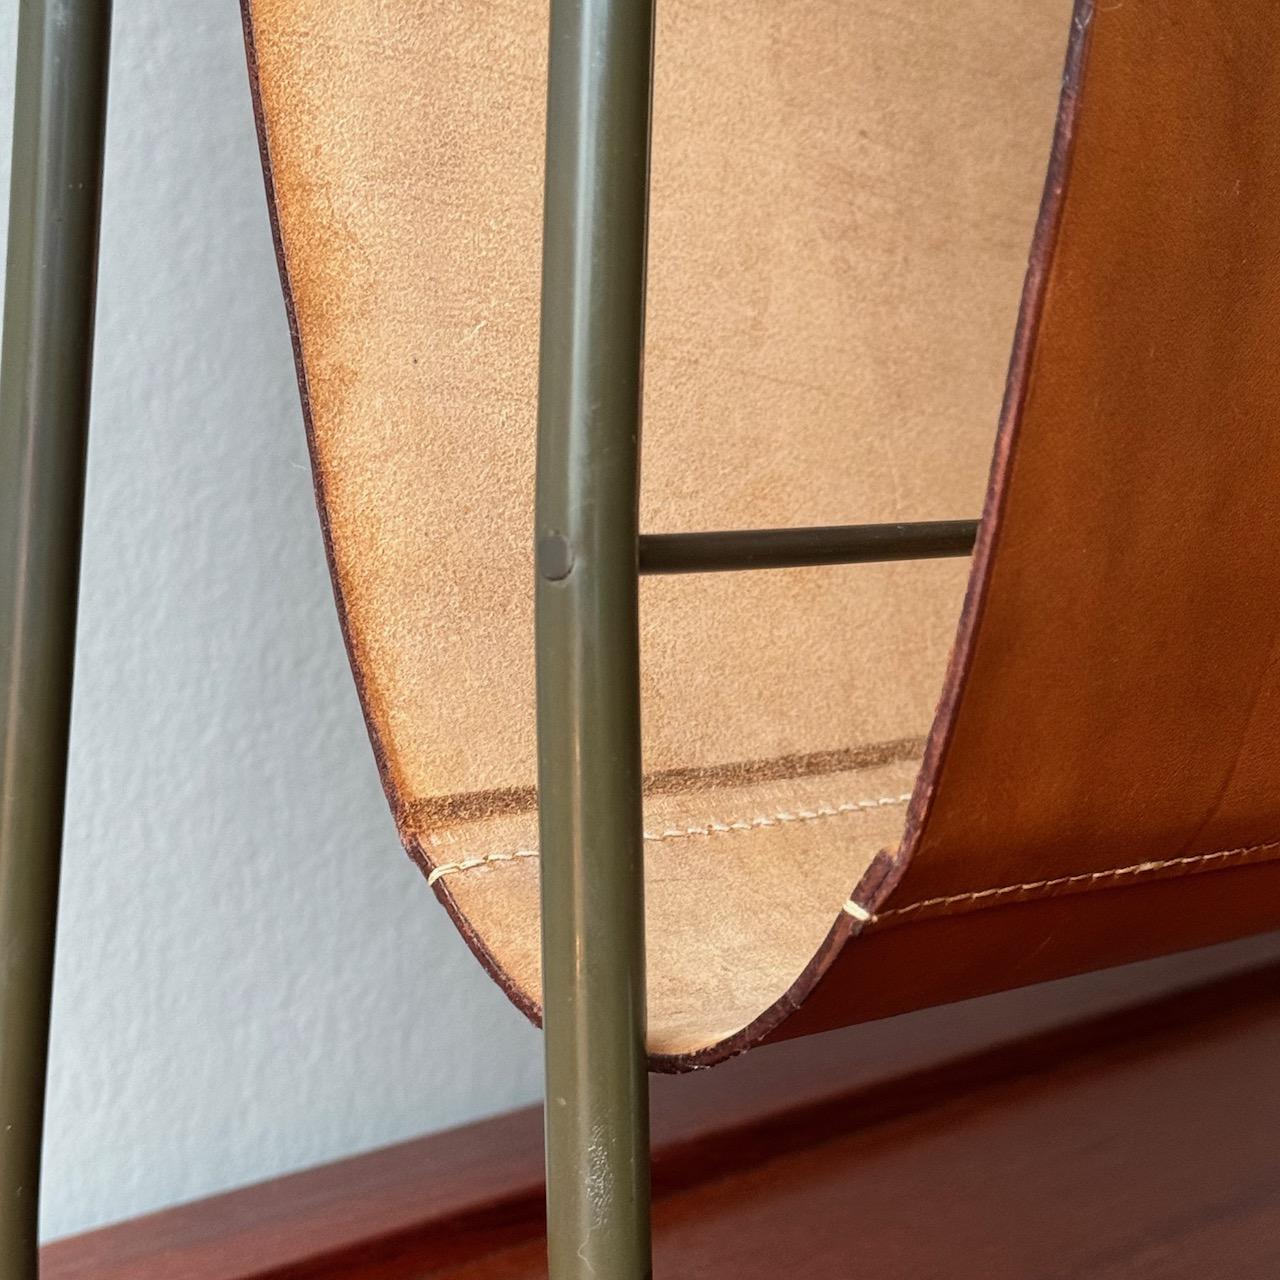 Porte-revues en cuir conçu par Carl Auböck II dans les années 1950.

Composé d'une élingue en cuir fauve et d'une armature tubulaire en laiton, ce porte-revues a été conçu et fabriqué par Carl Auböck II. Le cadre en laiton patiné de l'étagère